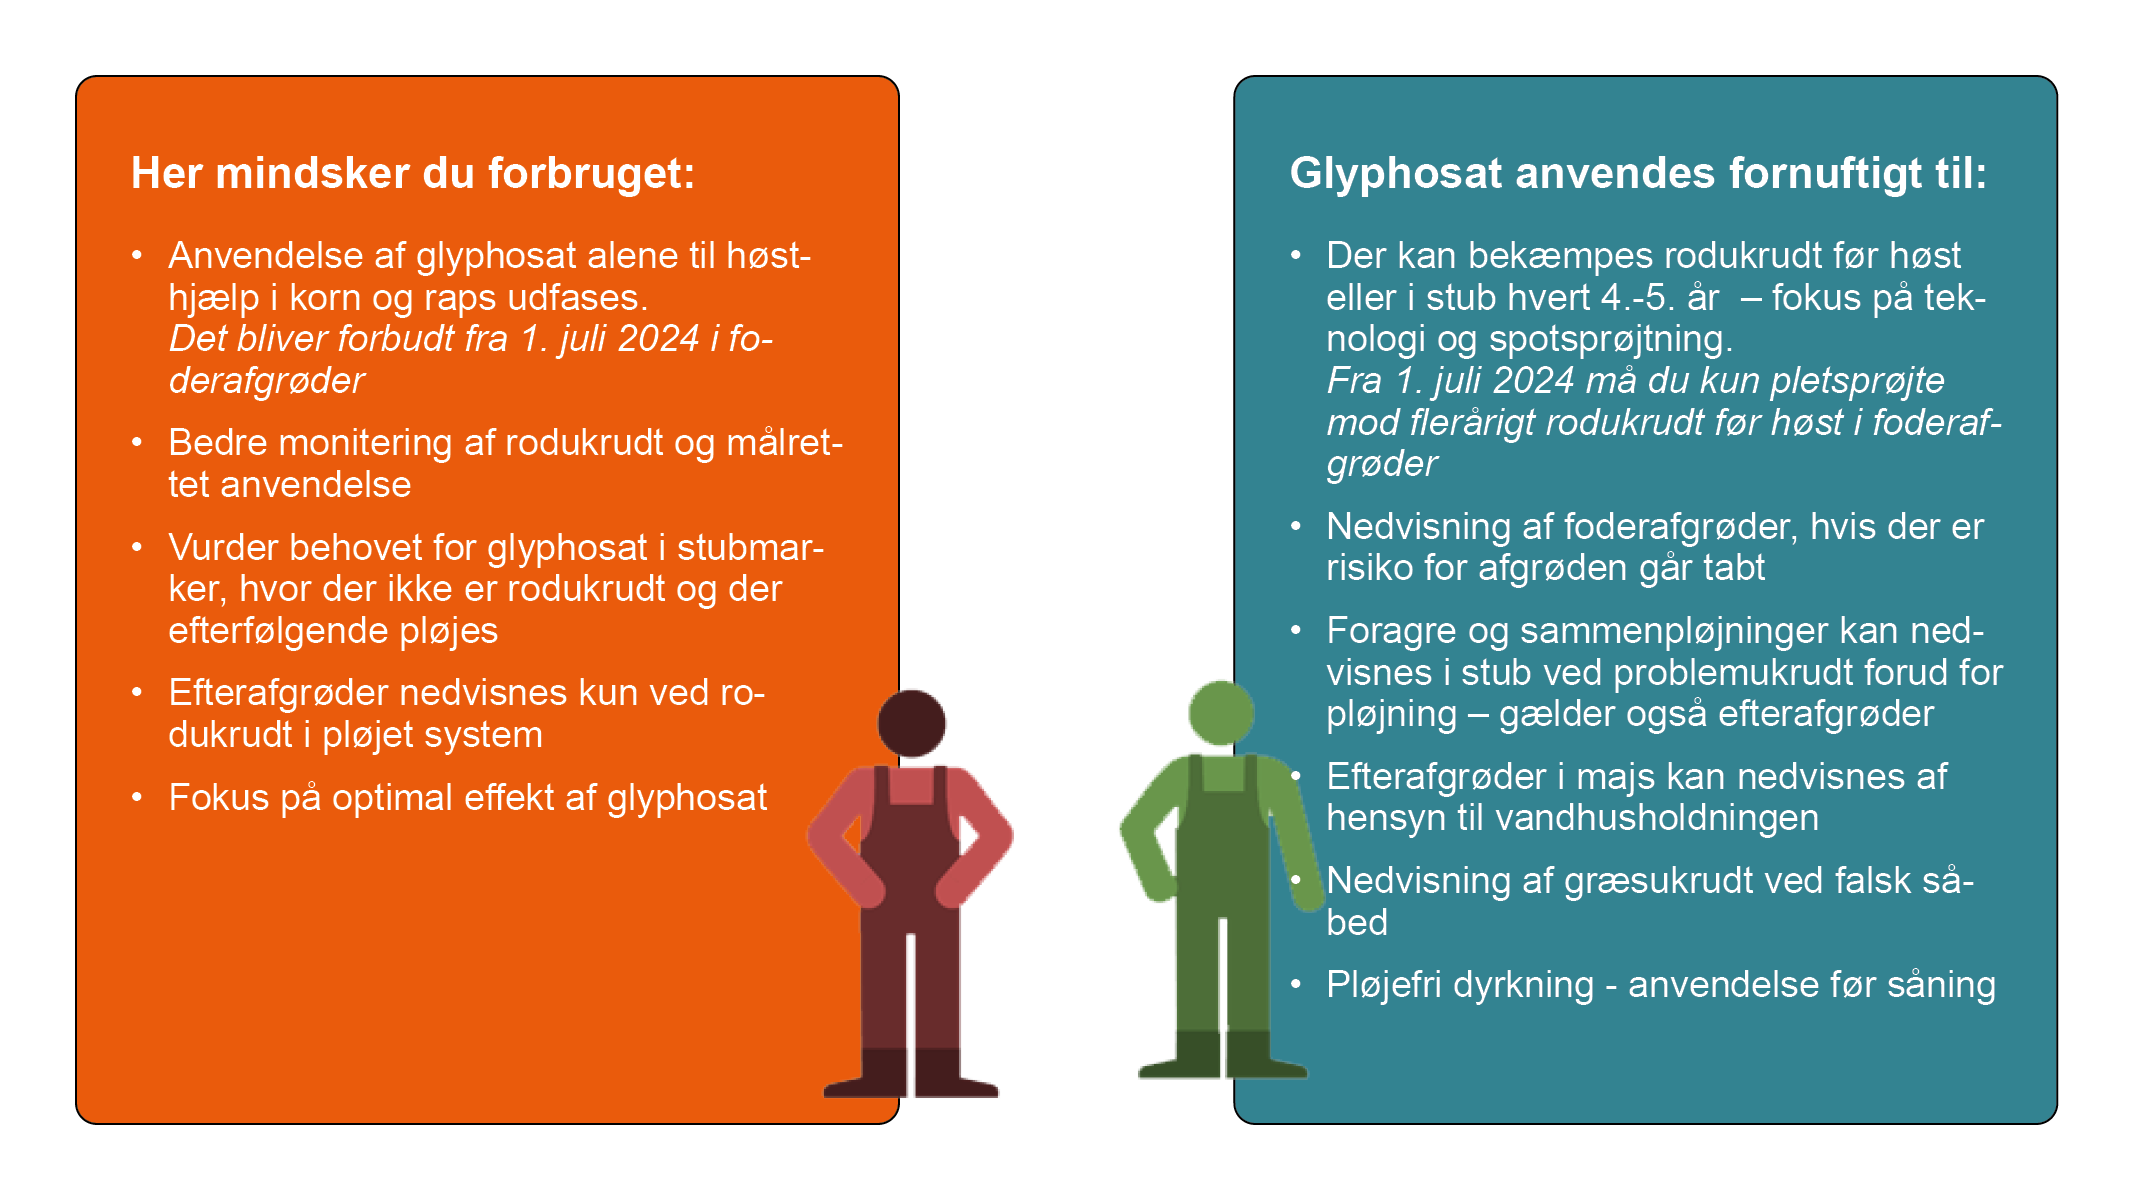 guidelines til hvordan vi opnår et nedsat forbrug af glyphosat i 2023